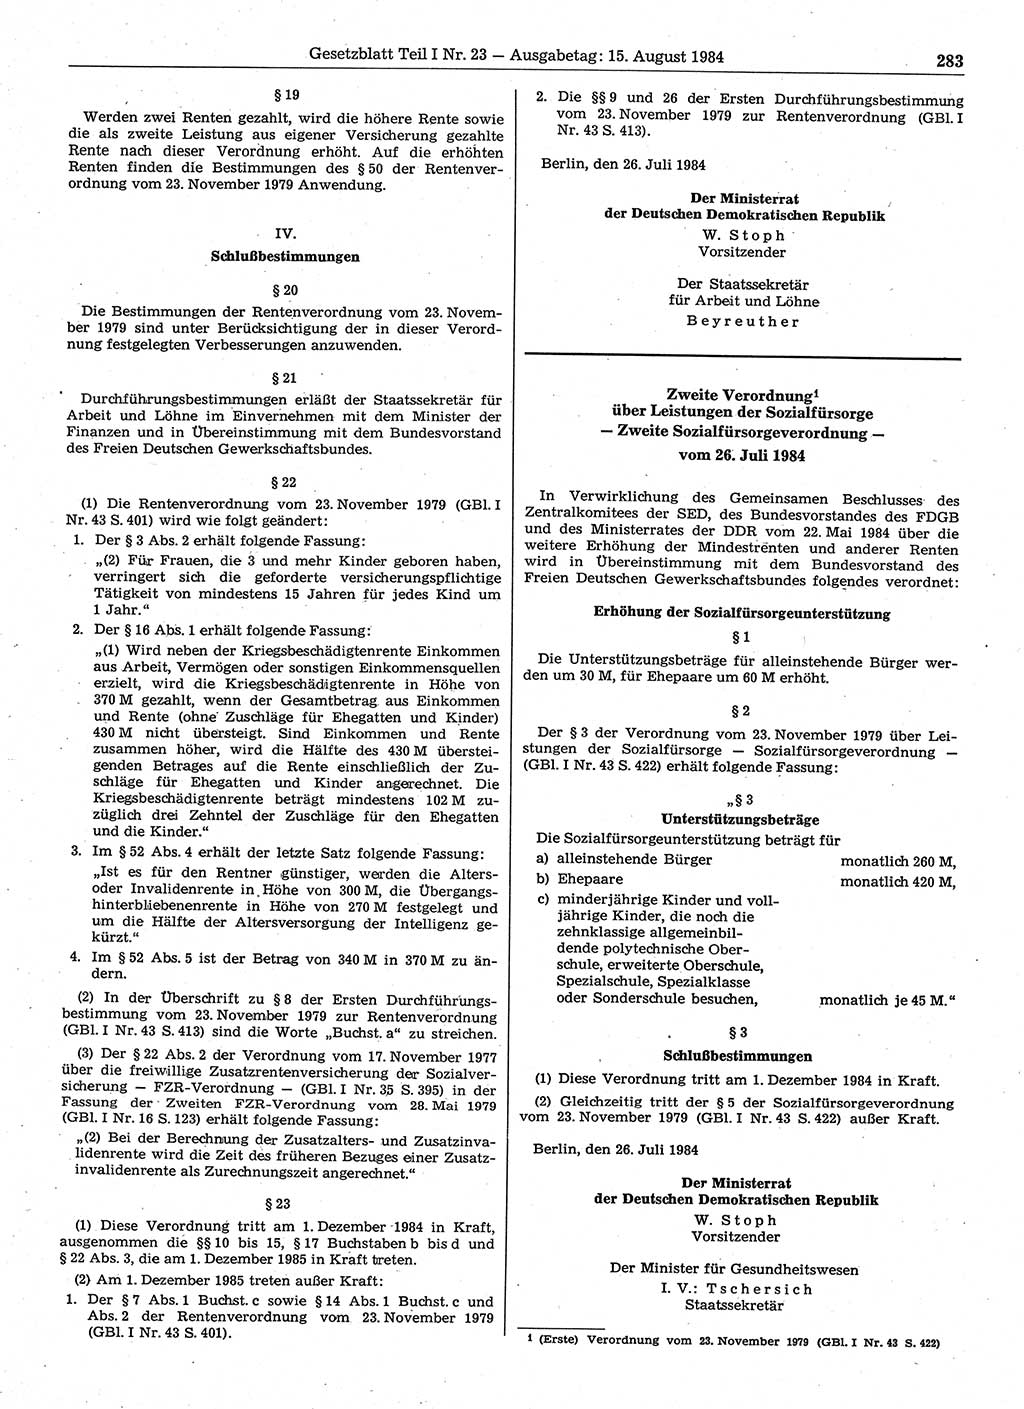 Gesetzblatt (GBl.) der Deutschen Demokratischen Republik (DDR) Teil Ⅰ 1984, Seite 283 (GBl. DDR Ⅰ 1984, S. 283)